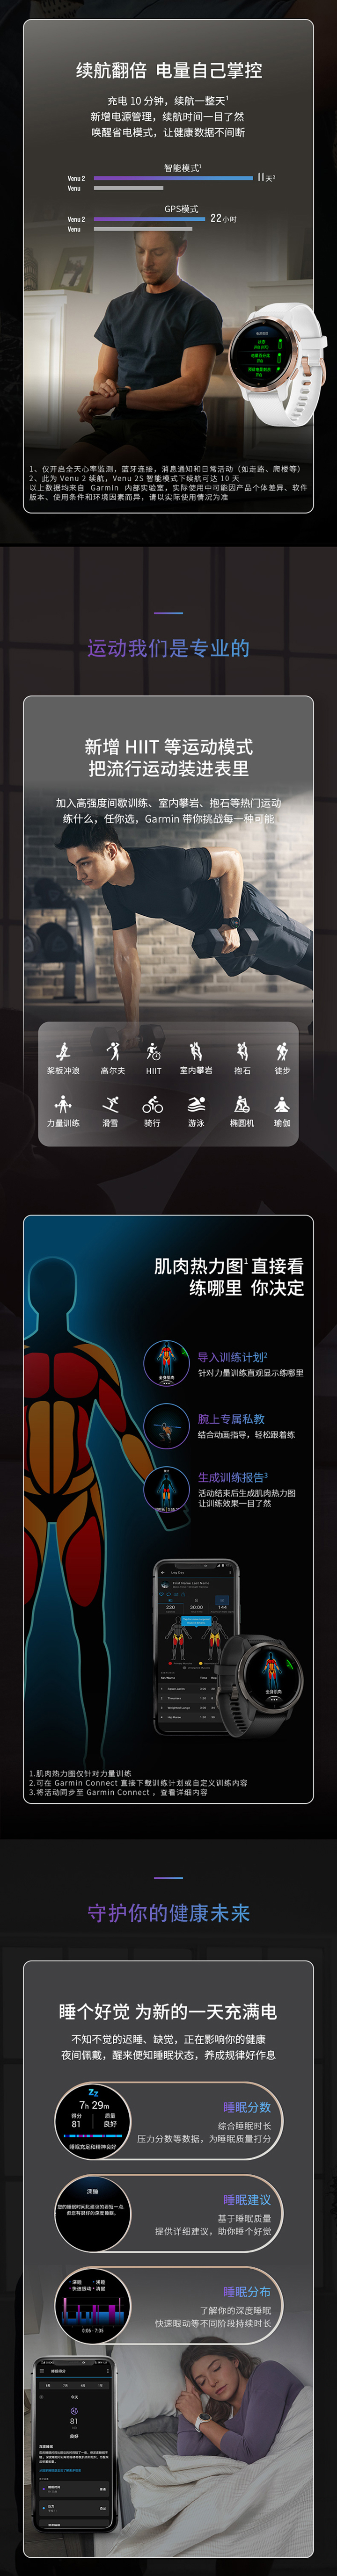 佳明Venu 2系列智能腕表免费试用,评测